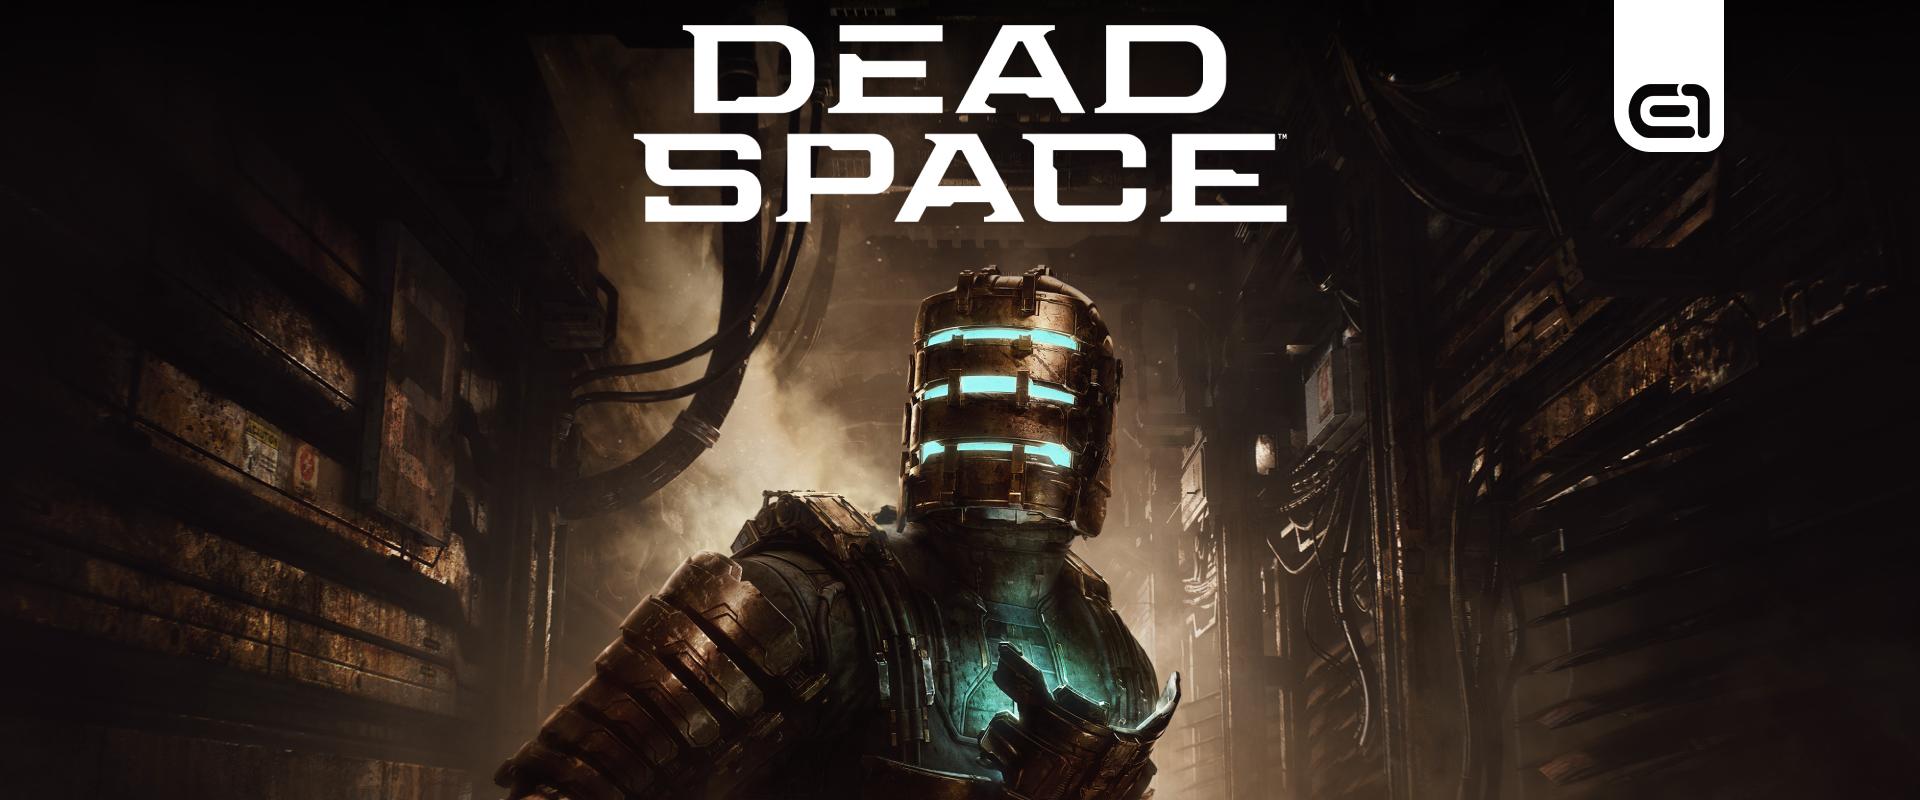 Megérkeztek a Dead Space remake első pontszámai!